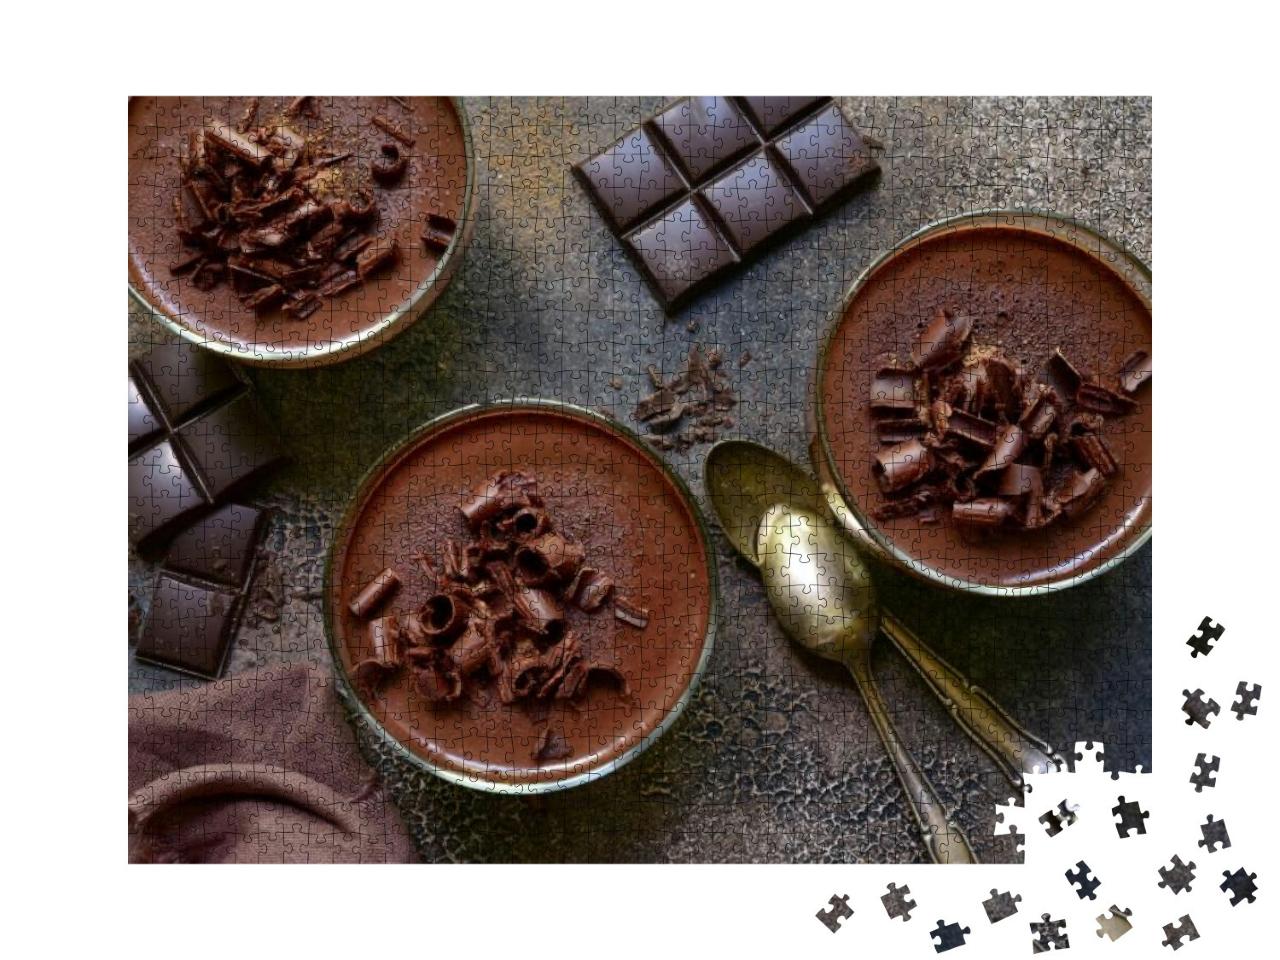 Puzzle 1000 Teile „Hausgemachte Mousse au Chocolat, raffiniert serviert“